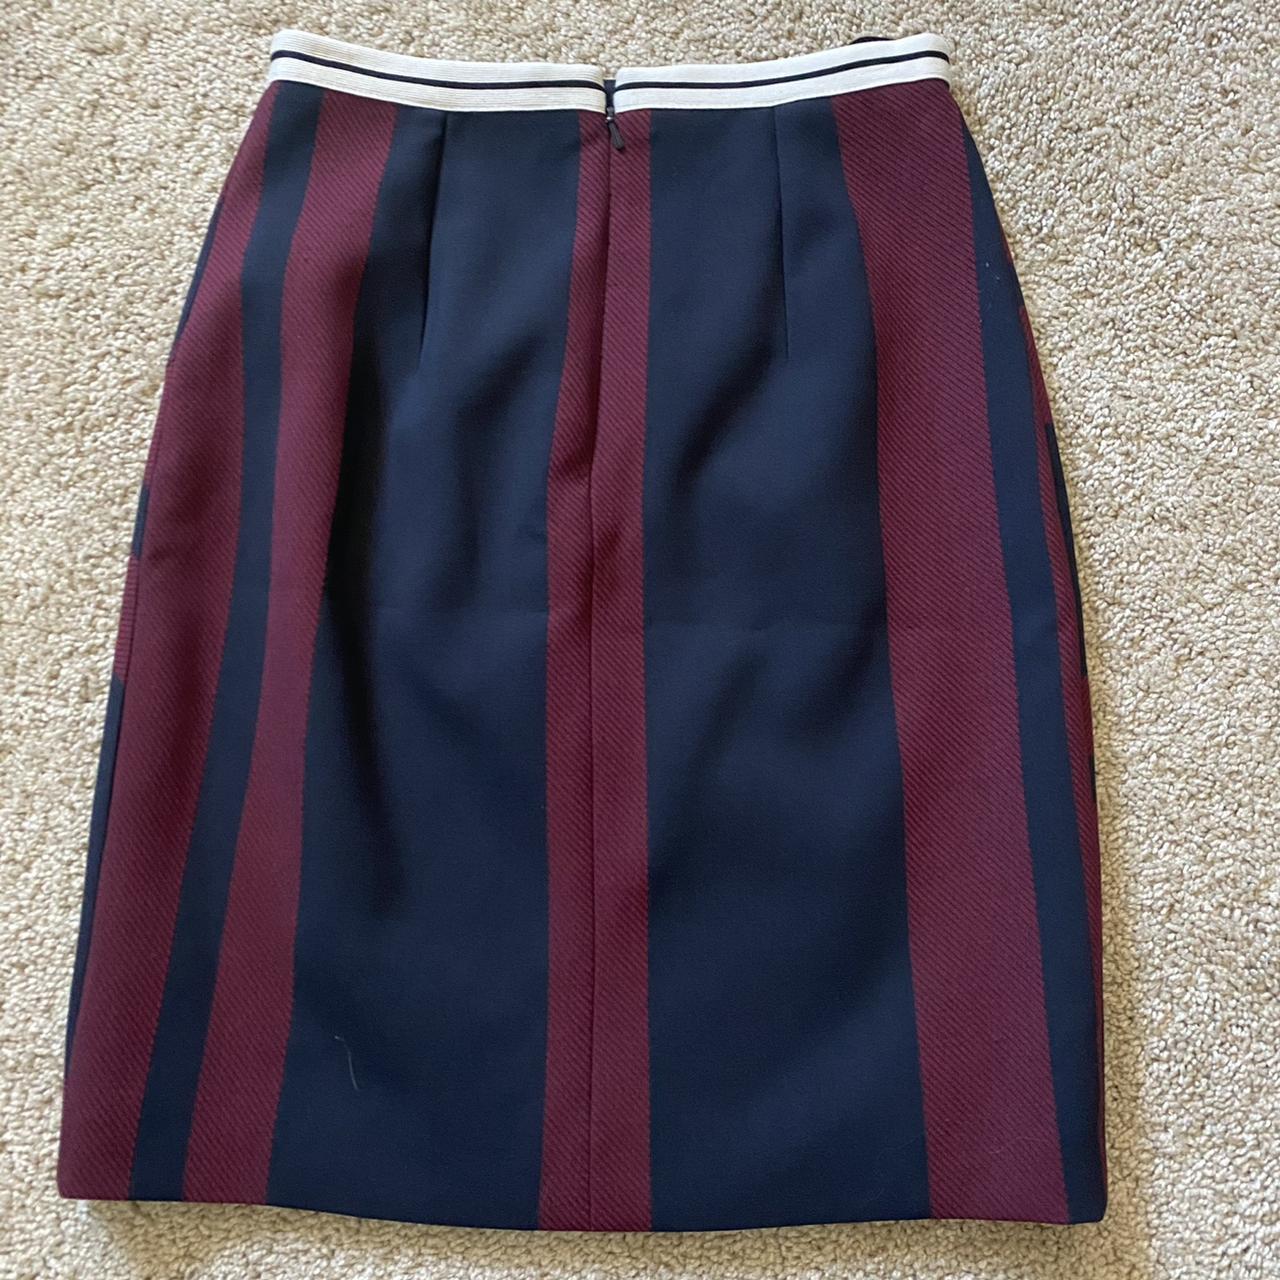 Karen Millen Women's Burgundy and Navy Skirt (2)